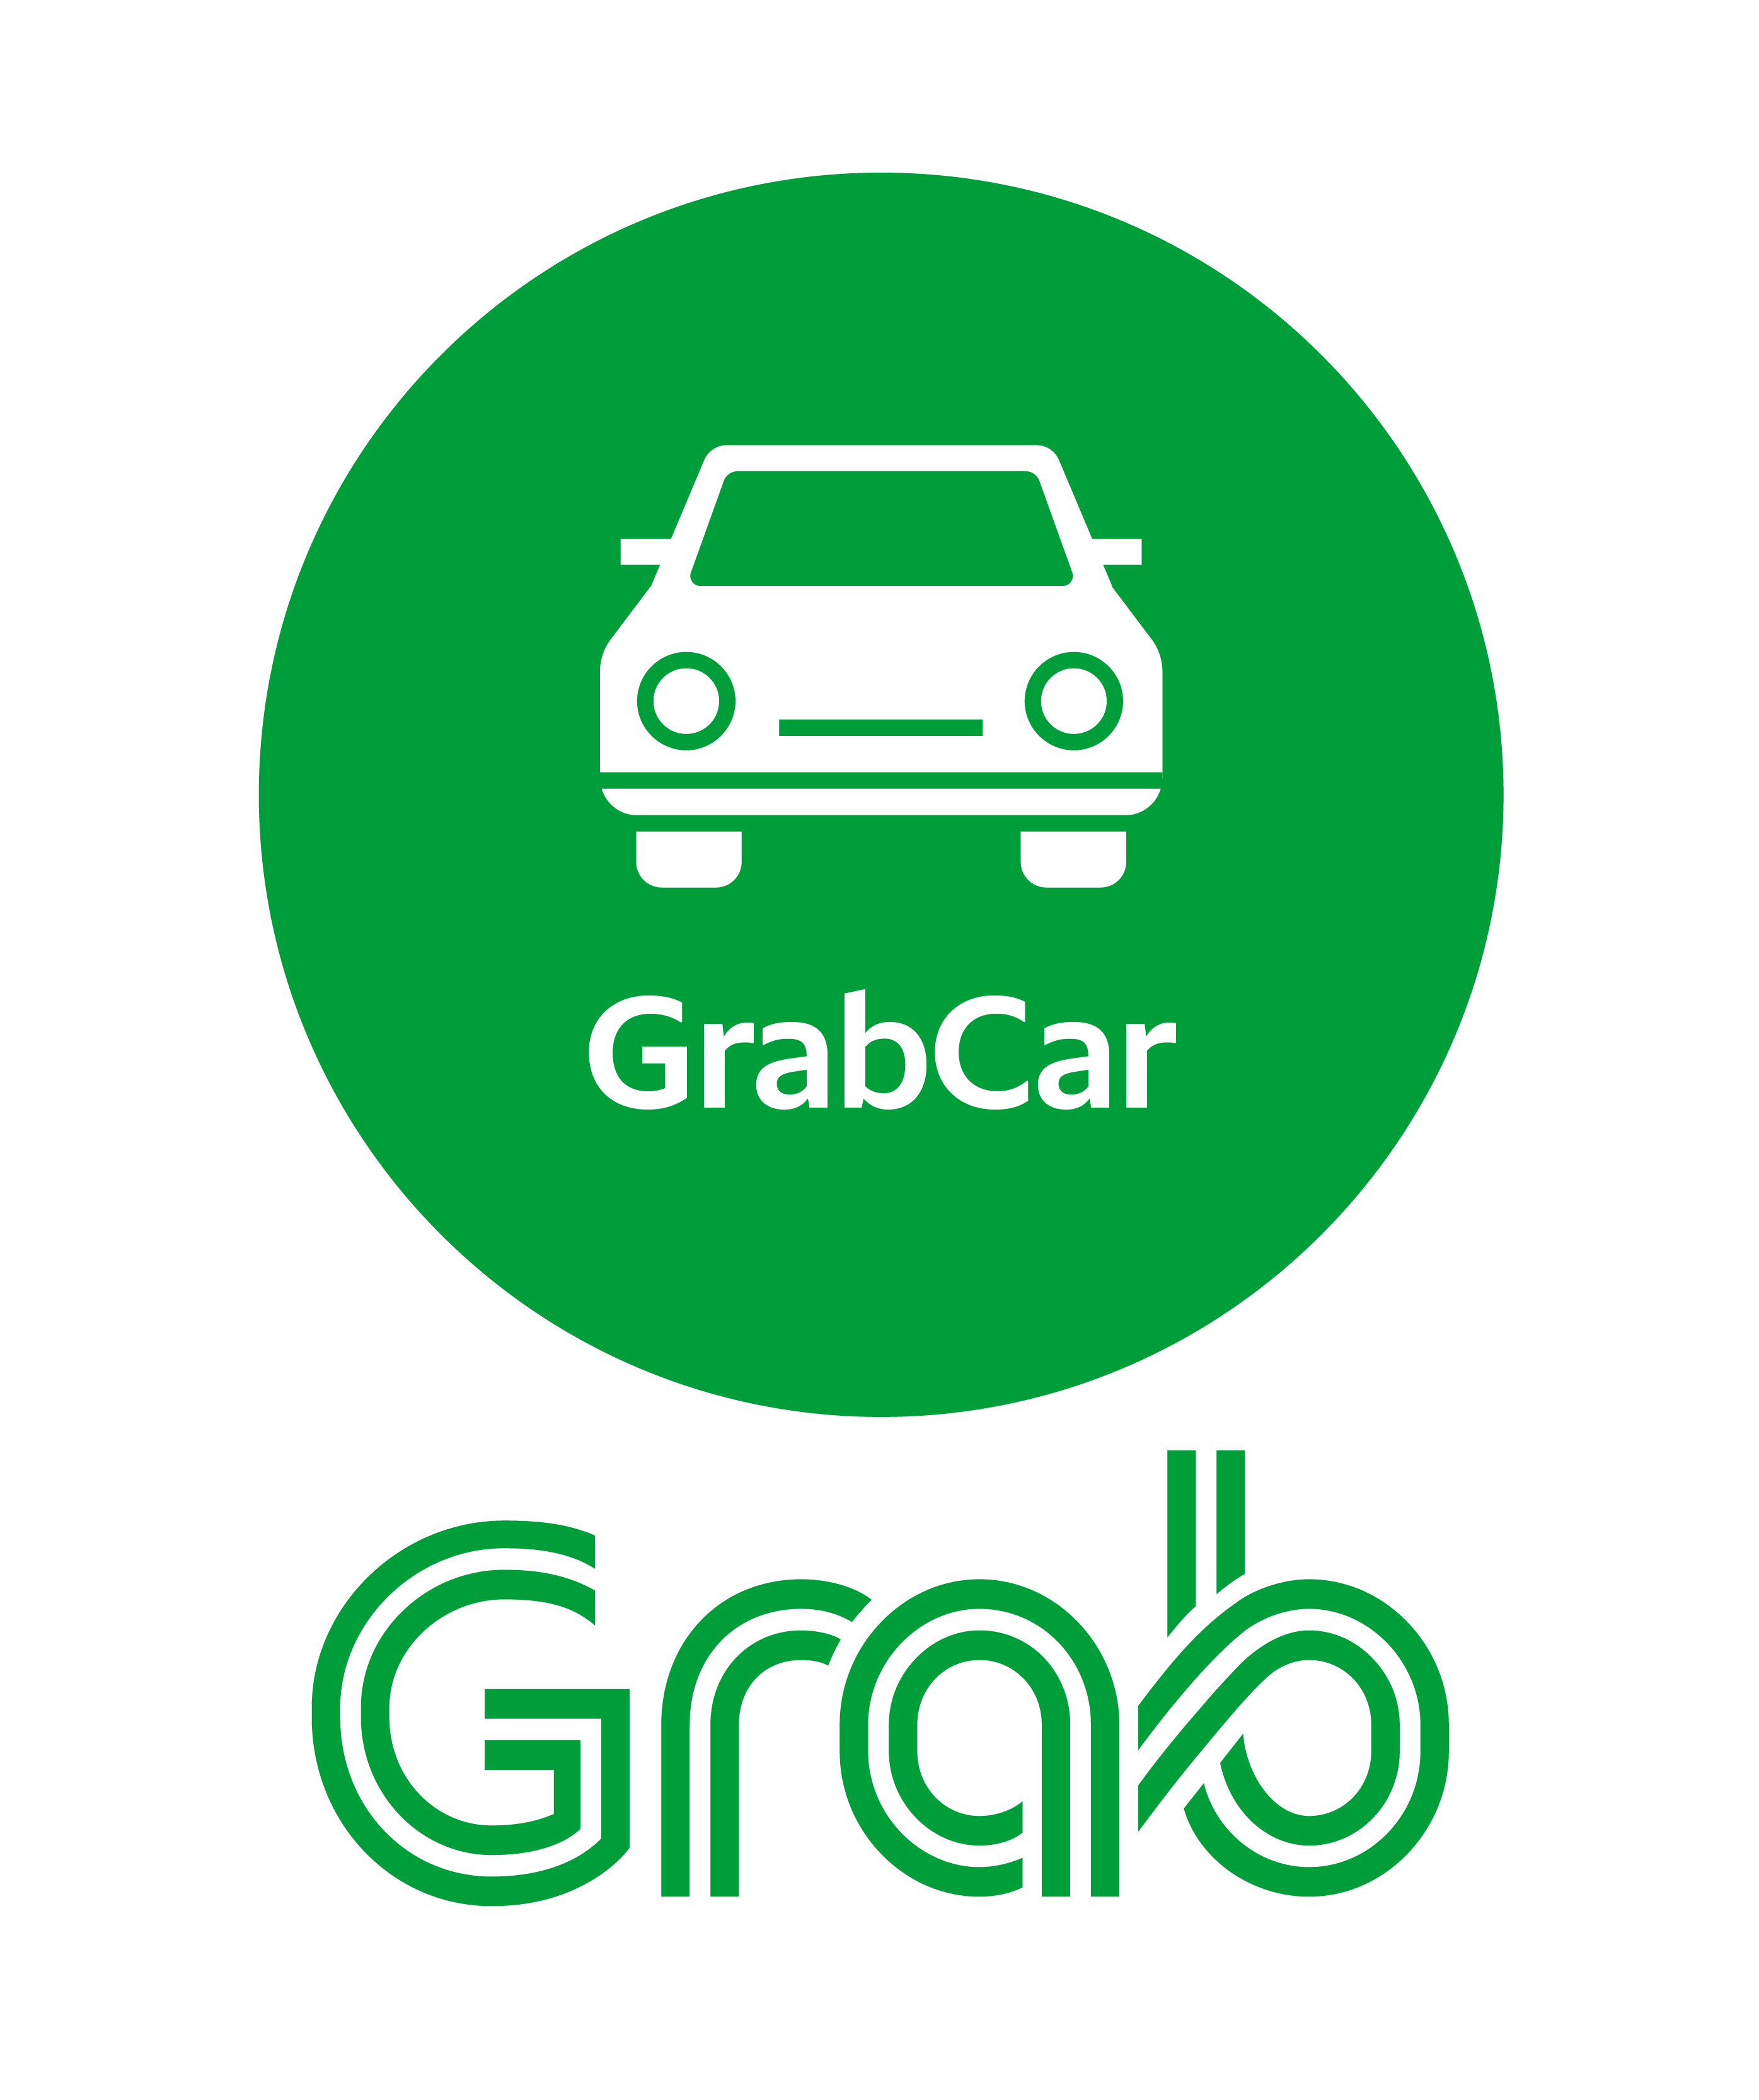 Grab Logo - Grab car logo png 6 » PNG Image